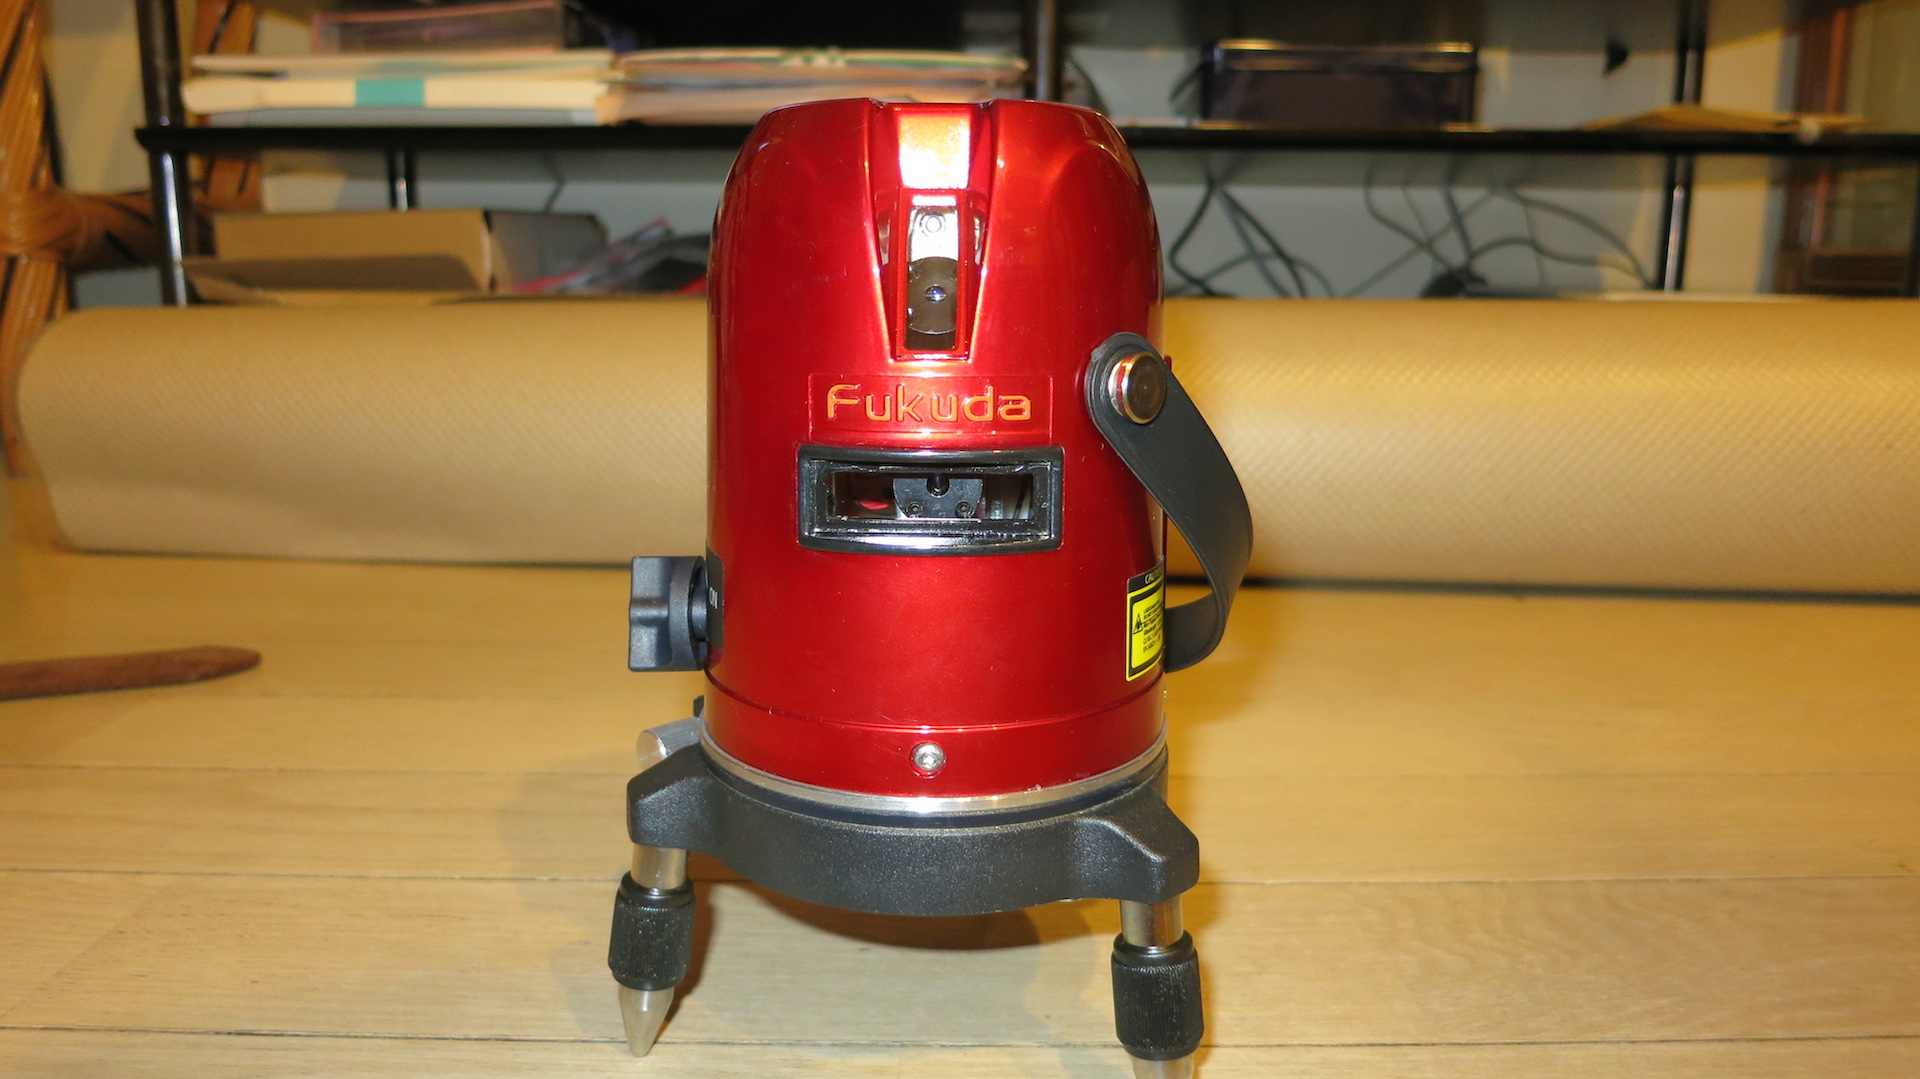 墨出し 5ライン レーザー墨出し器 Fukuda Ek 459p エミーオノットのブログ